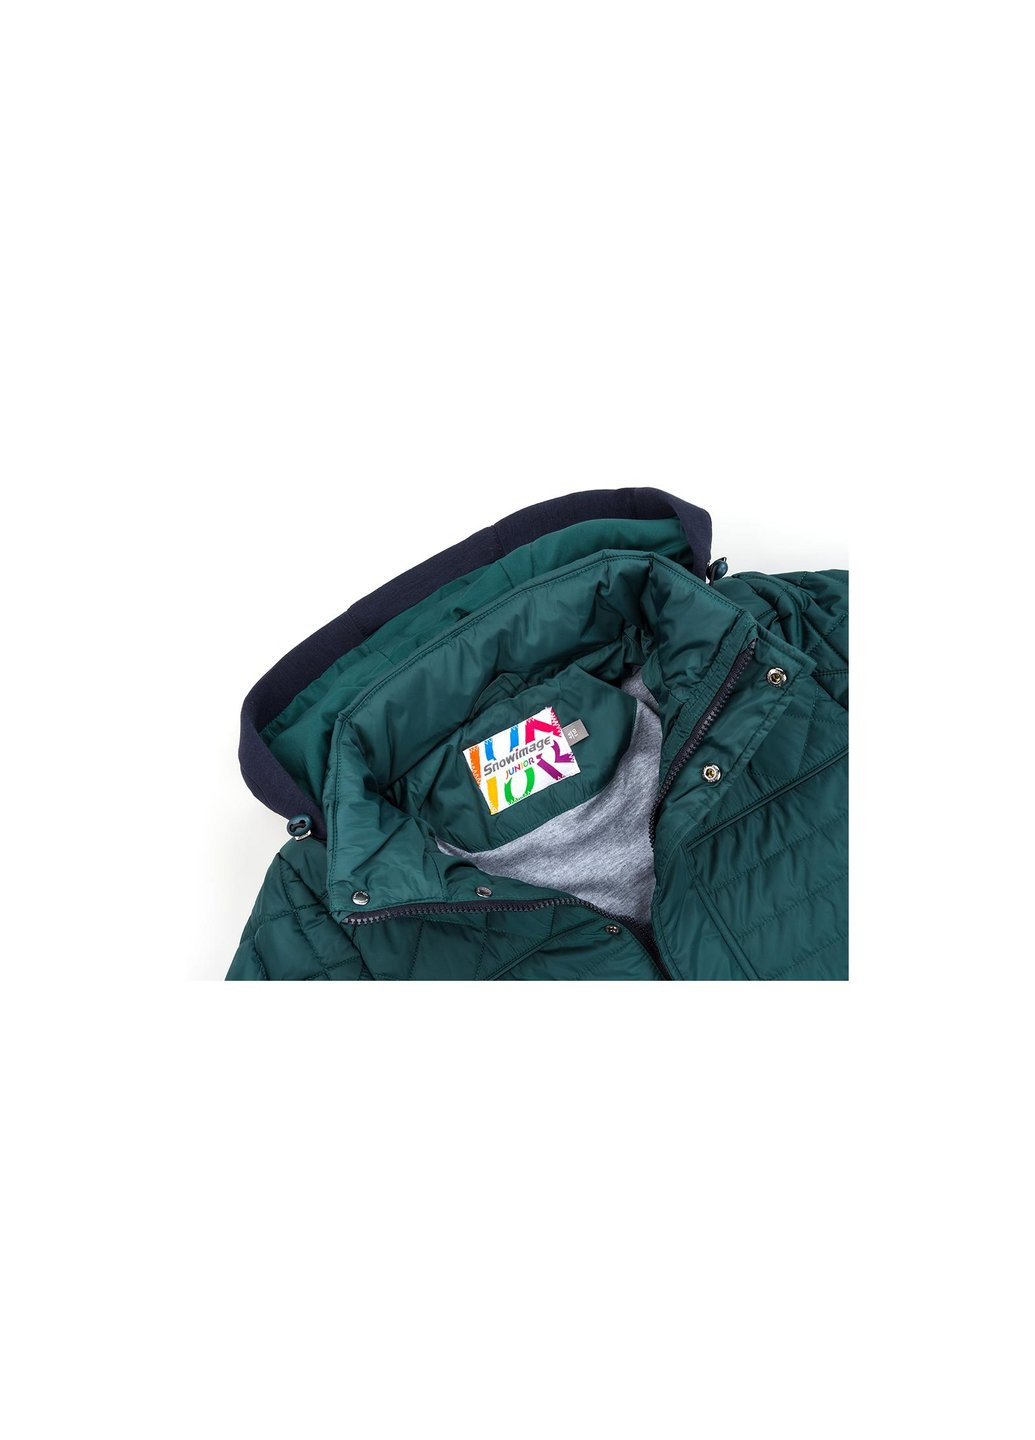 Зеленая демисезонная куртка с капюшоном на манжетах (sicmy-g308-110b-green) Snowimage